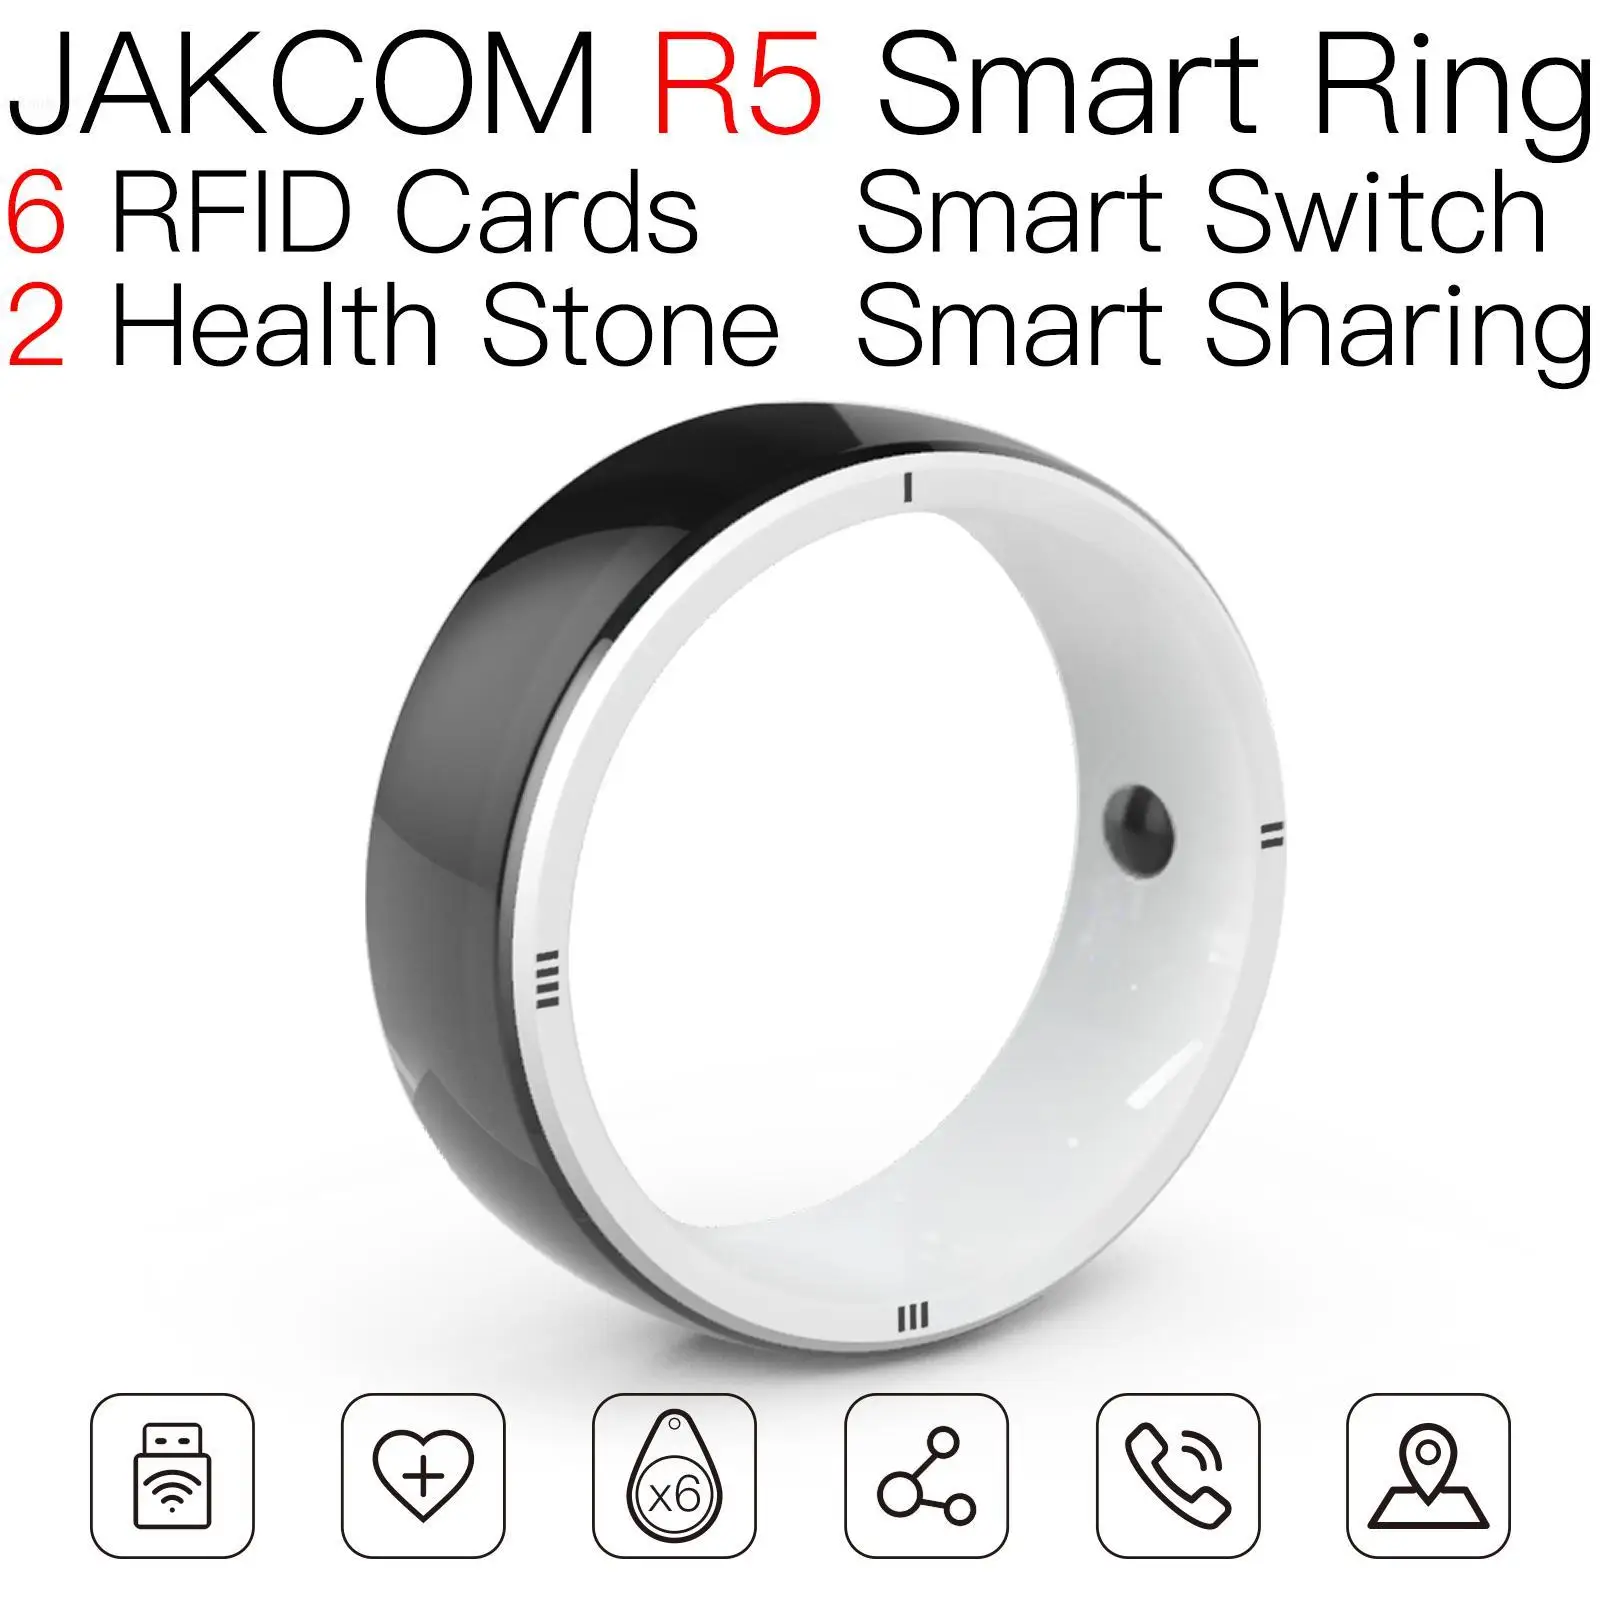 

Умное кольцо JAKCOM R5, совместимое с запоминанием, ic чип, переключатель, Коллекция игр, антенна, катушка, индуктор, rfid 125 кГц, брелоки ci tsa